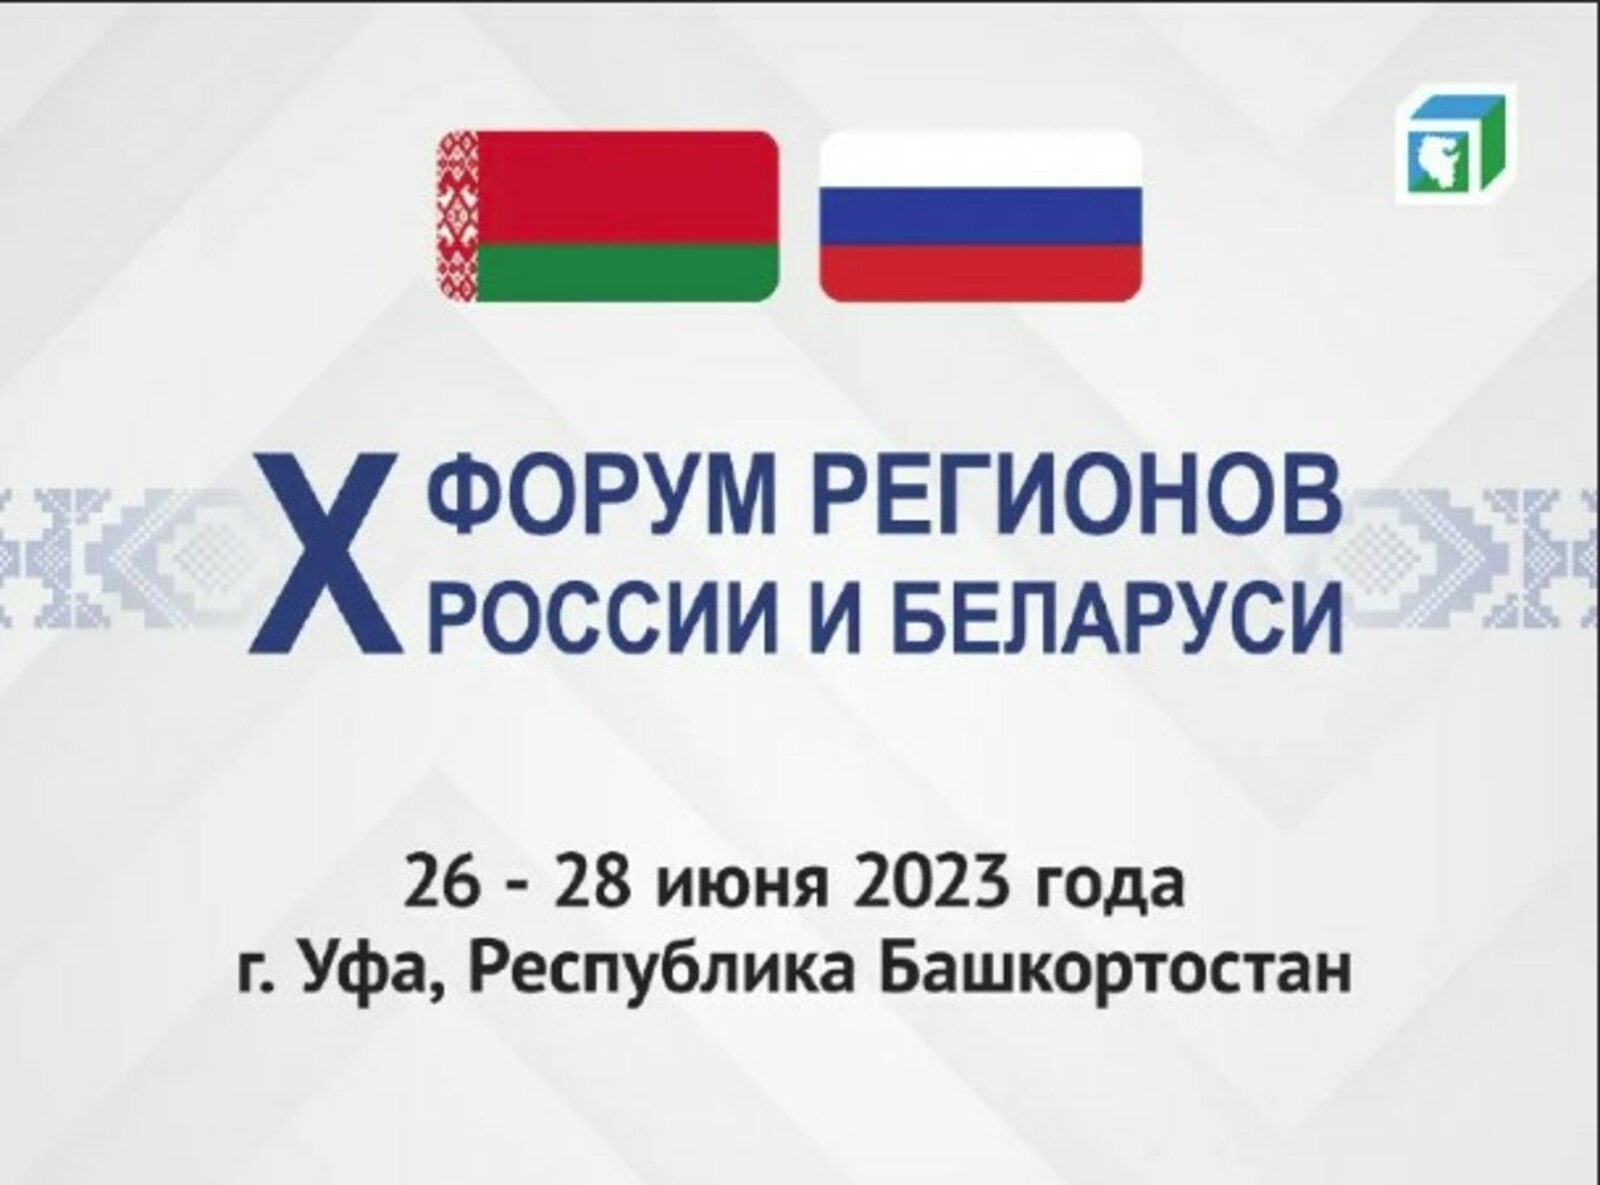 В Башкортостане обсудили развитие российско-белорусского сотрудничества в сфере АПК